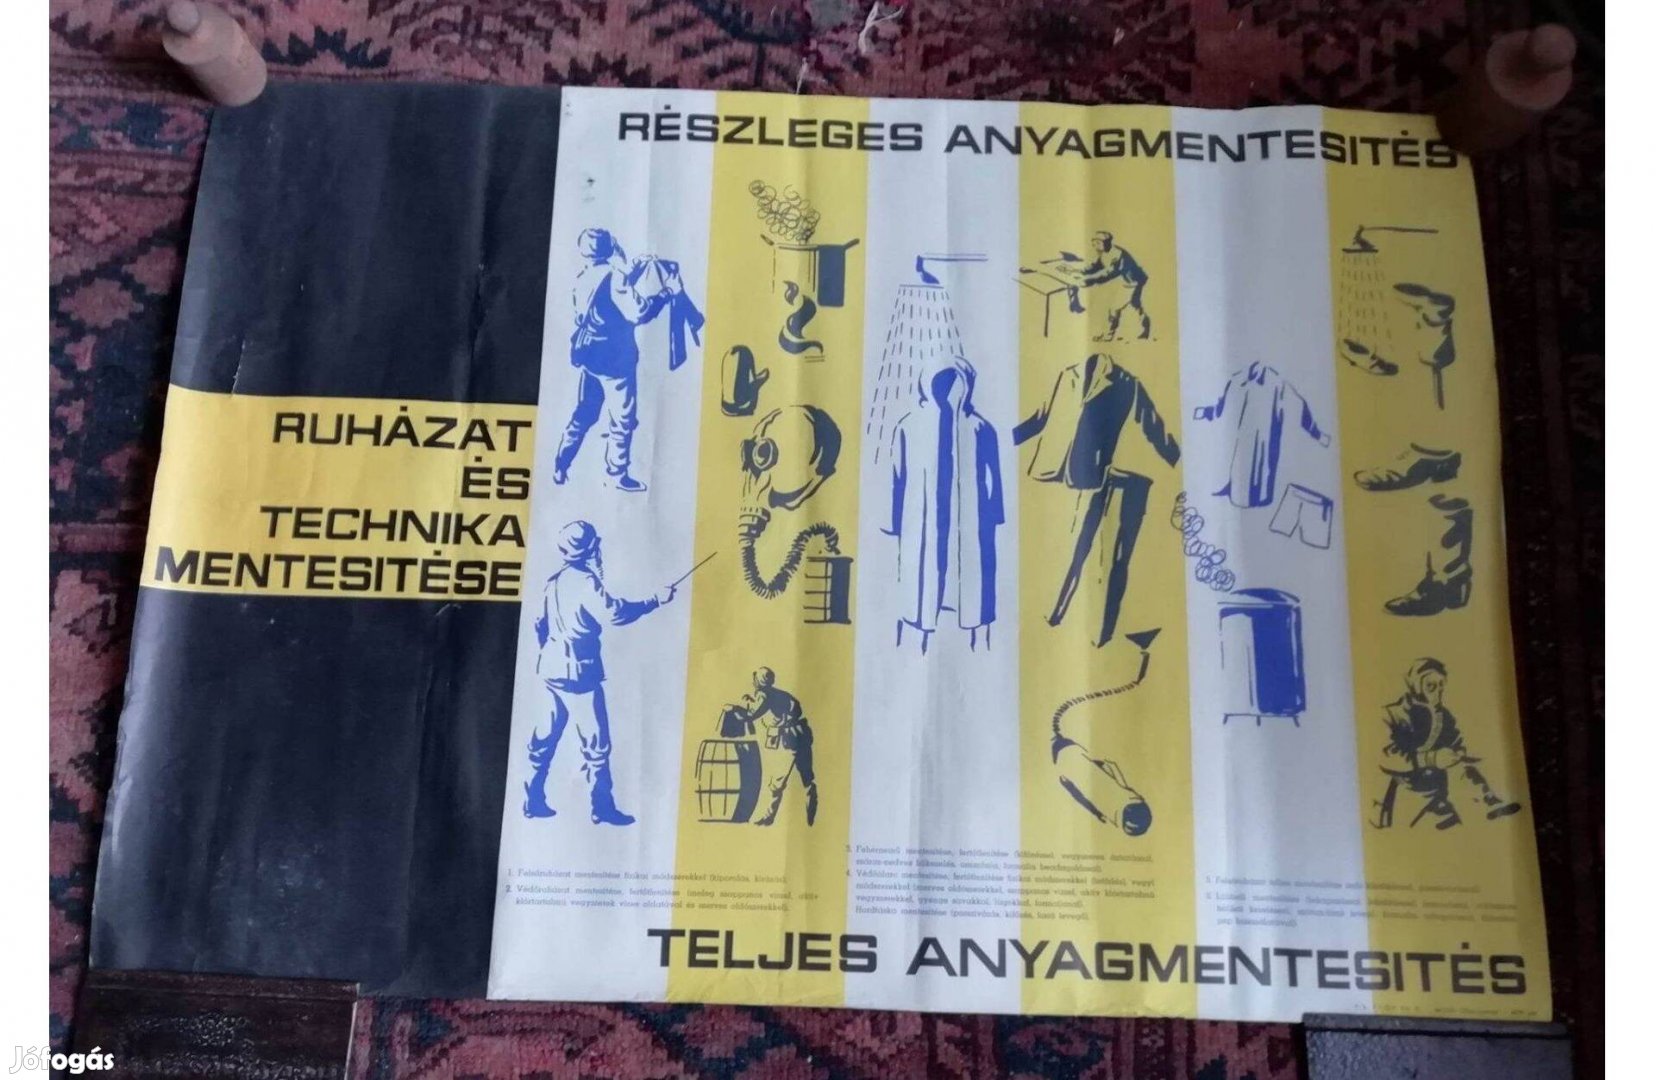 Ruházat és technika mentesítése, 1950 Részleges anyagmentesítés plakát